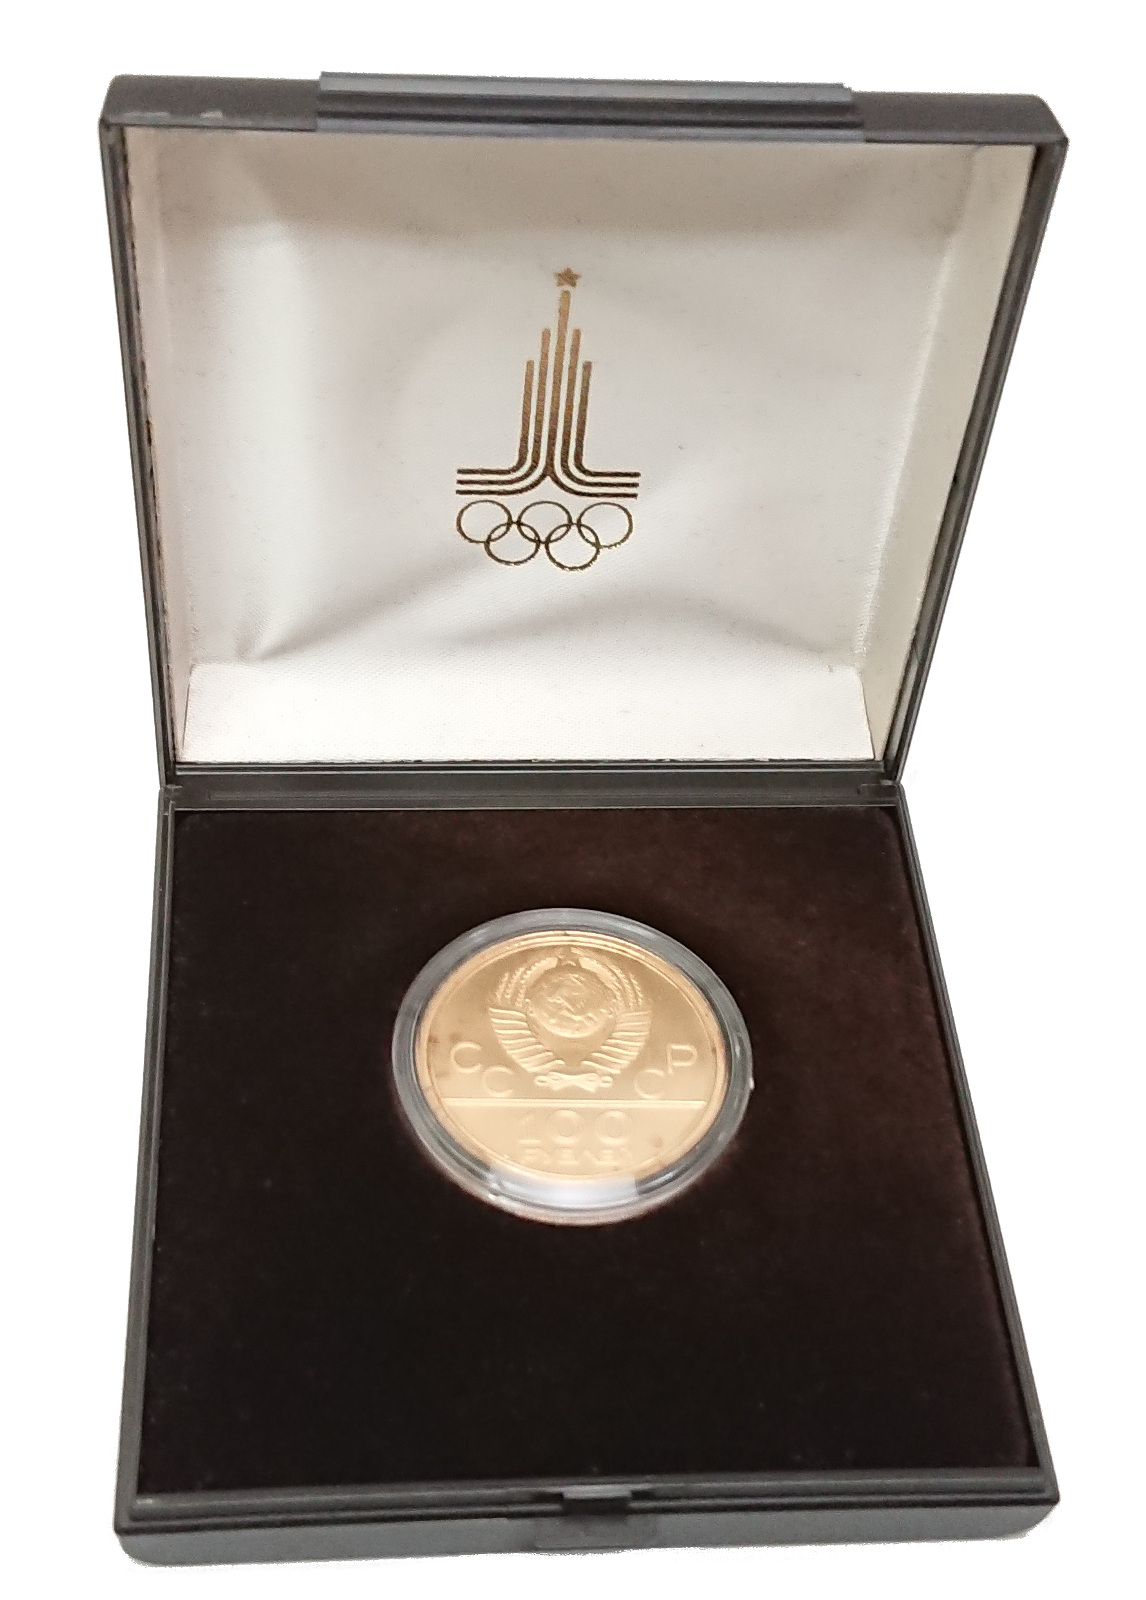 モスクワオリンピック記念硬貨